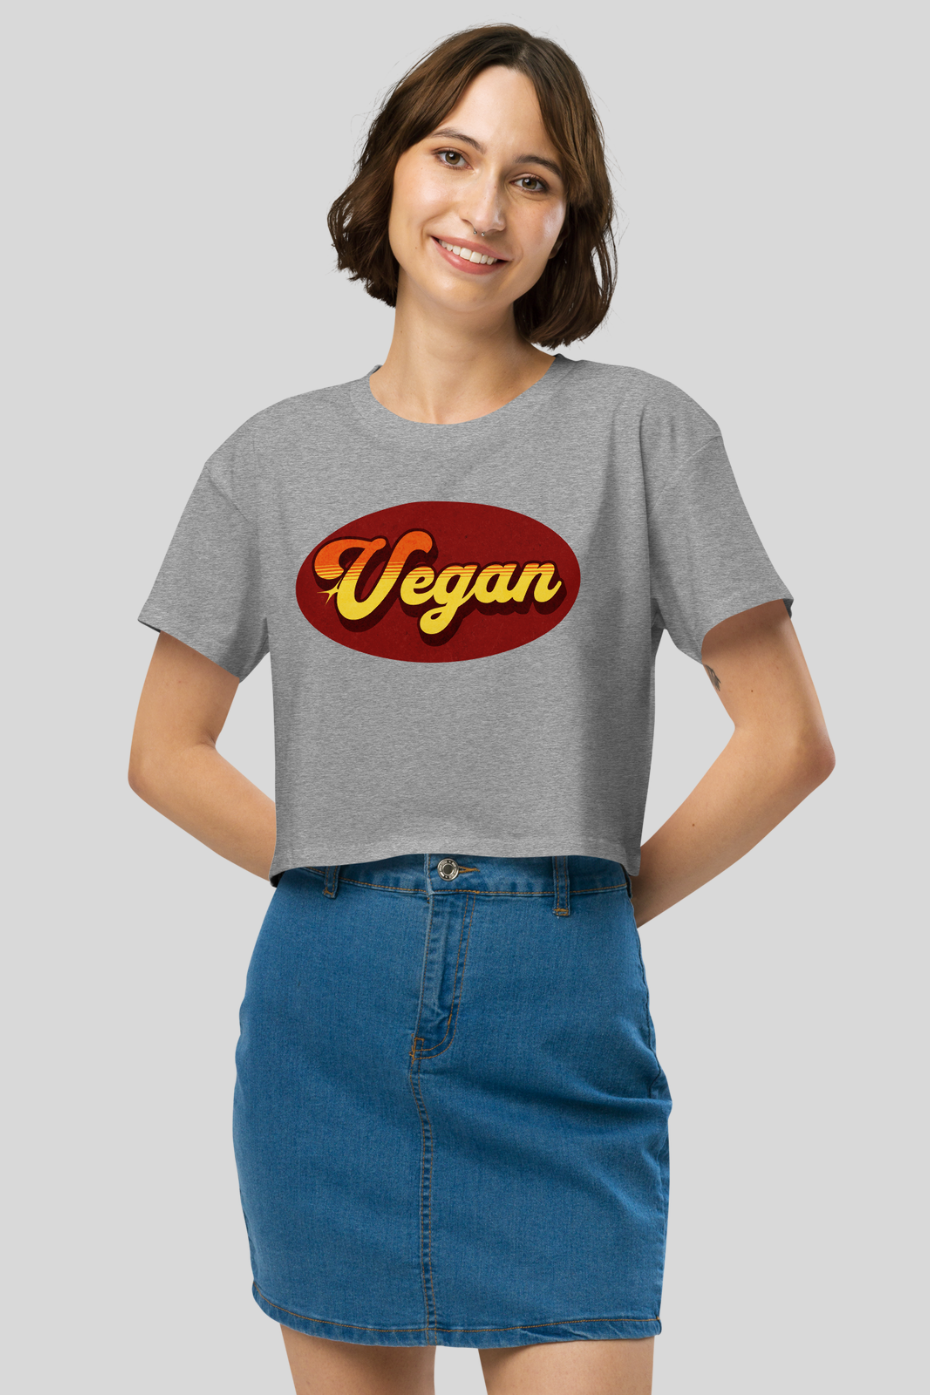 Retro Vegan - Women’s crop top